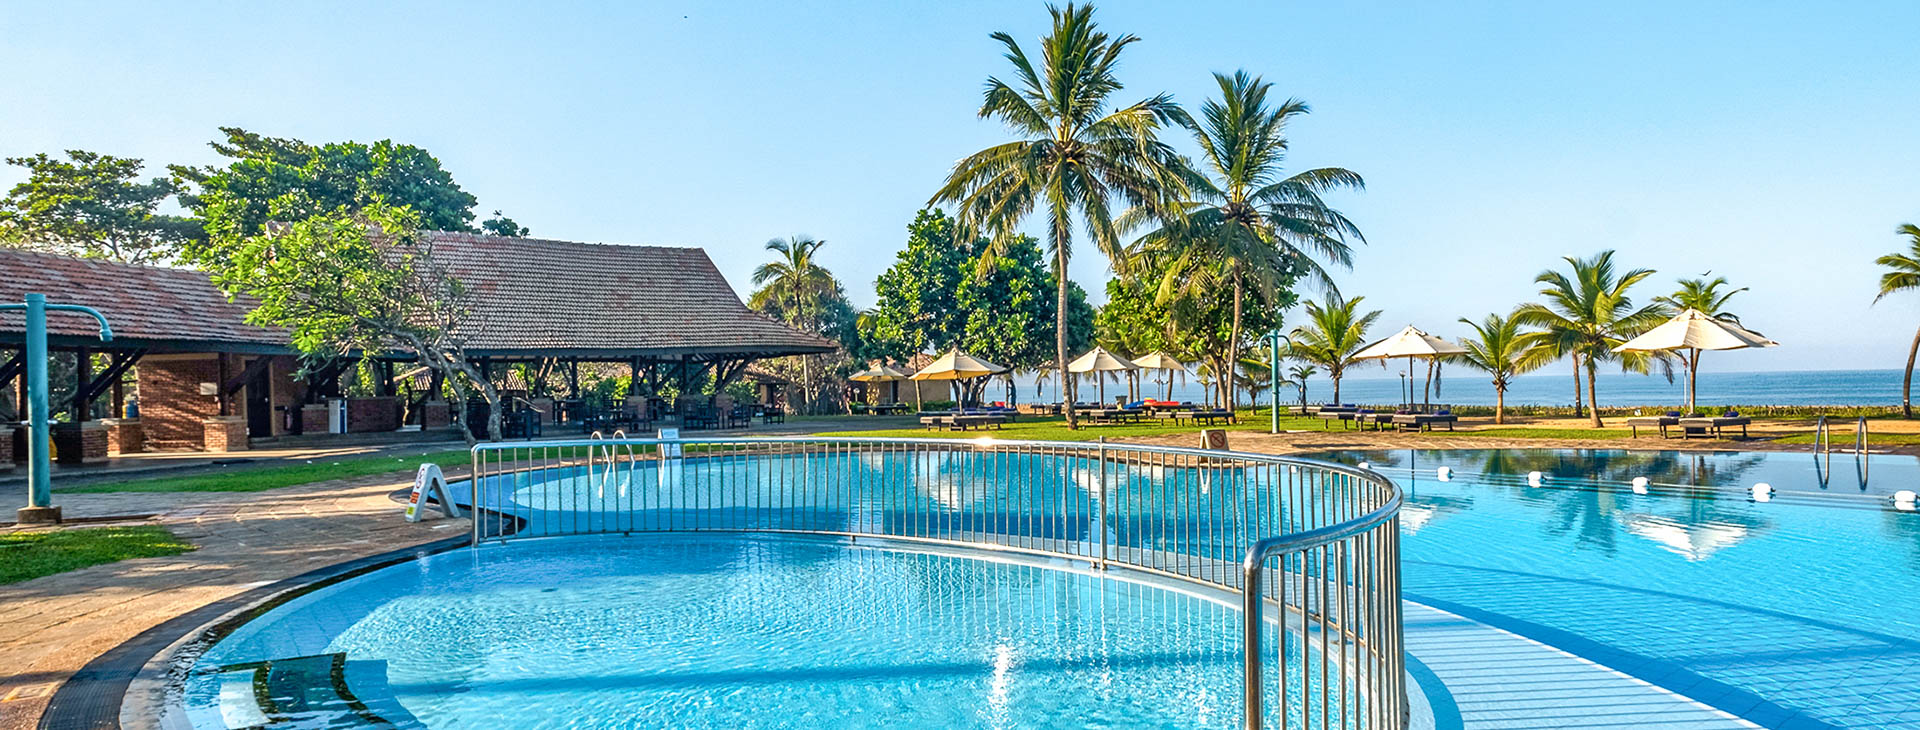 Club Hotel Dolphin - dovolená na Srí Lance Obrázek6